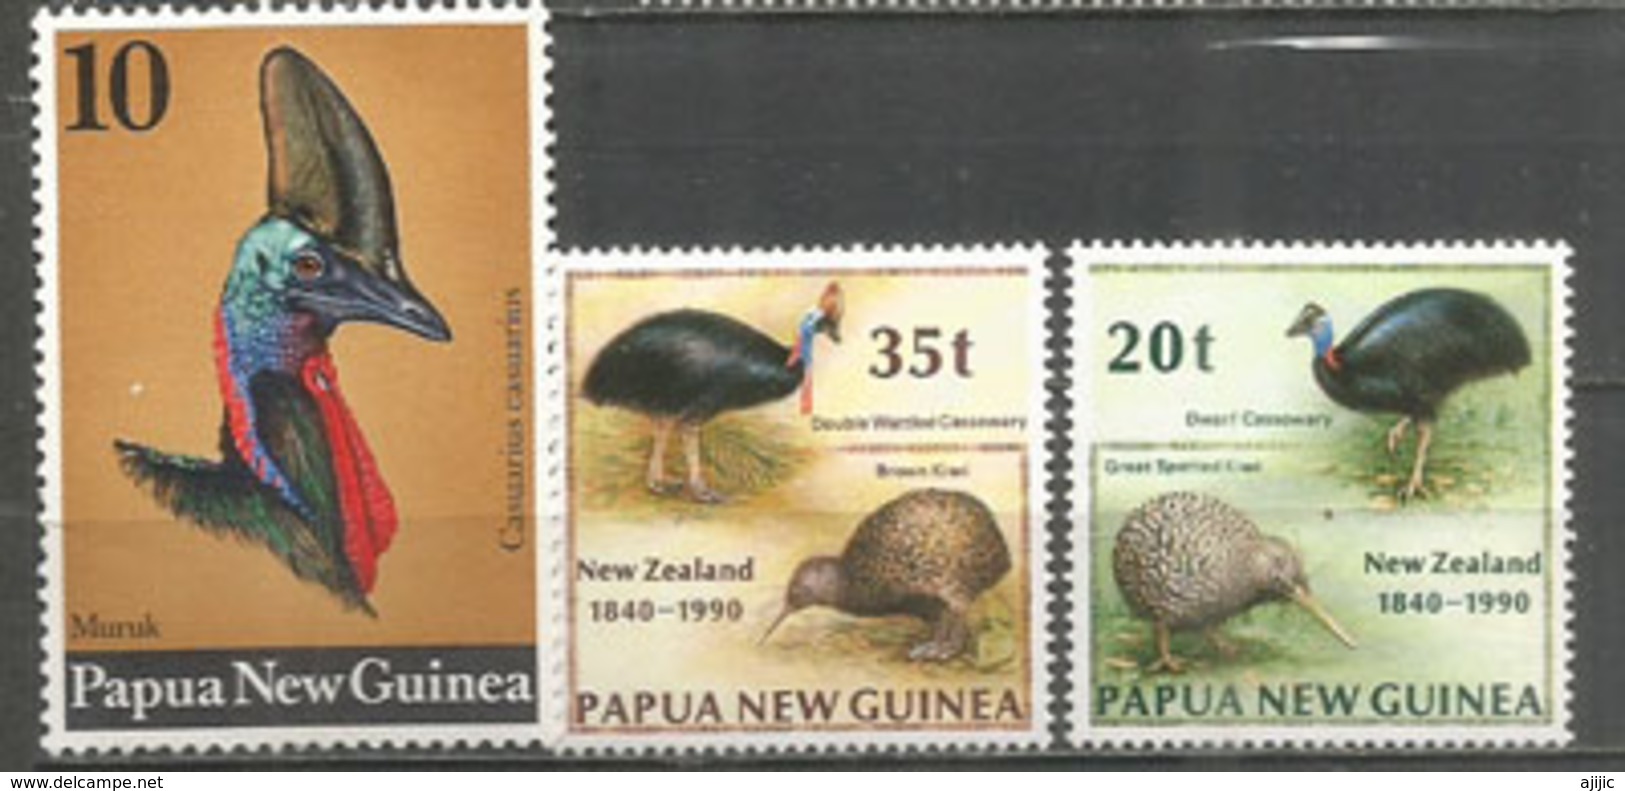 Le Casoar à Casque De Papouasie.  3 Timbres Neufs ** (PAPUA NEW-GUINEA) Côte 10.00 € - Autruches